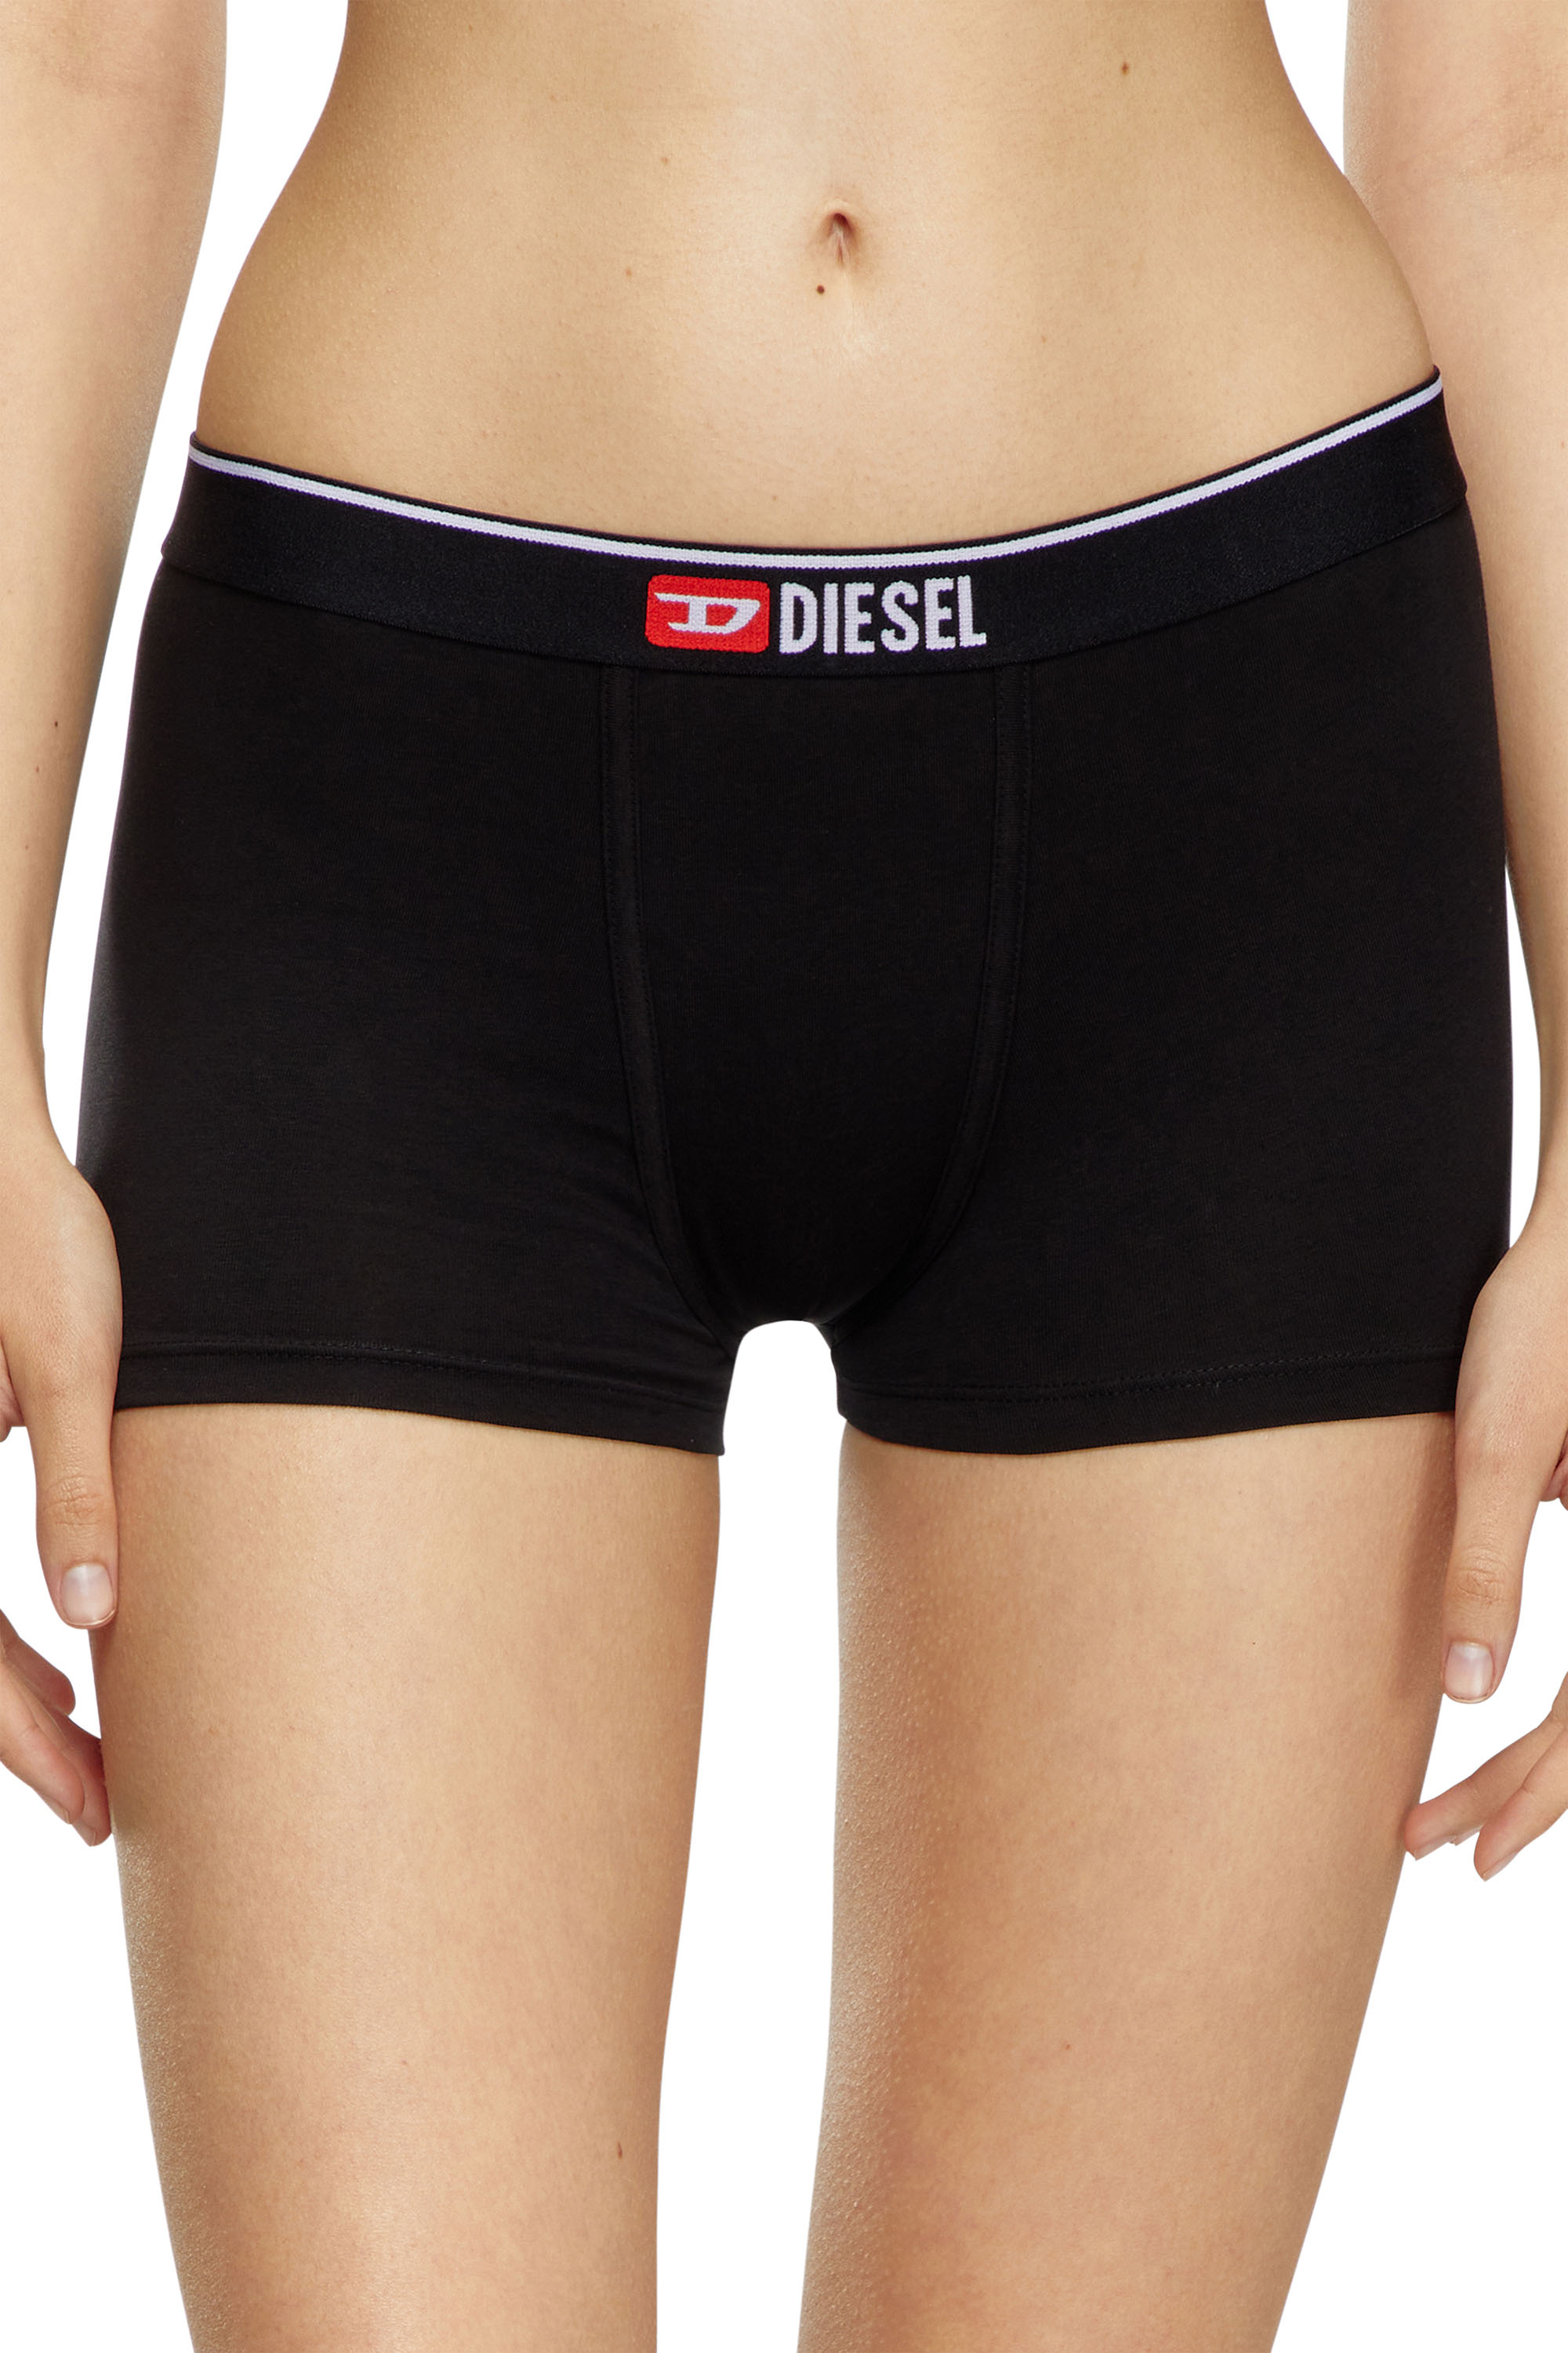 Diesel - Einfarbige Retropants im Zweierpack - Panties - Damen - Bunt